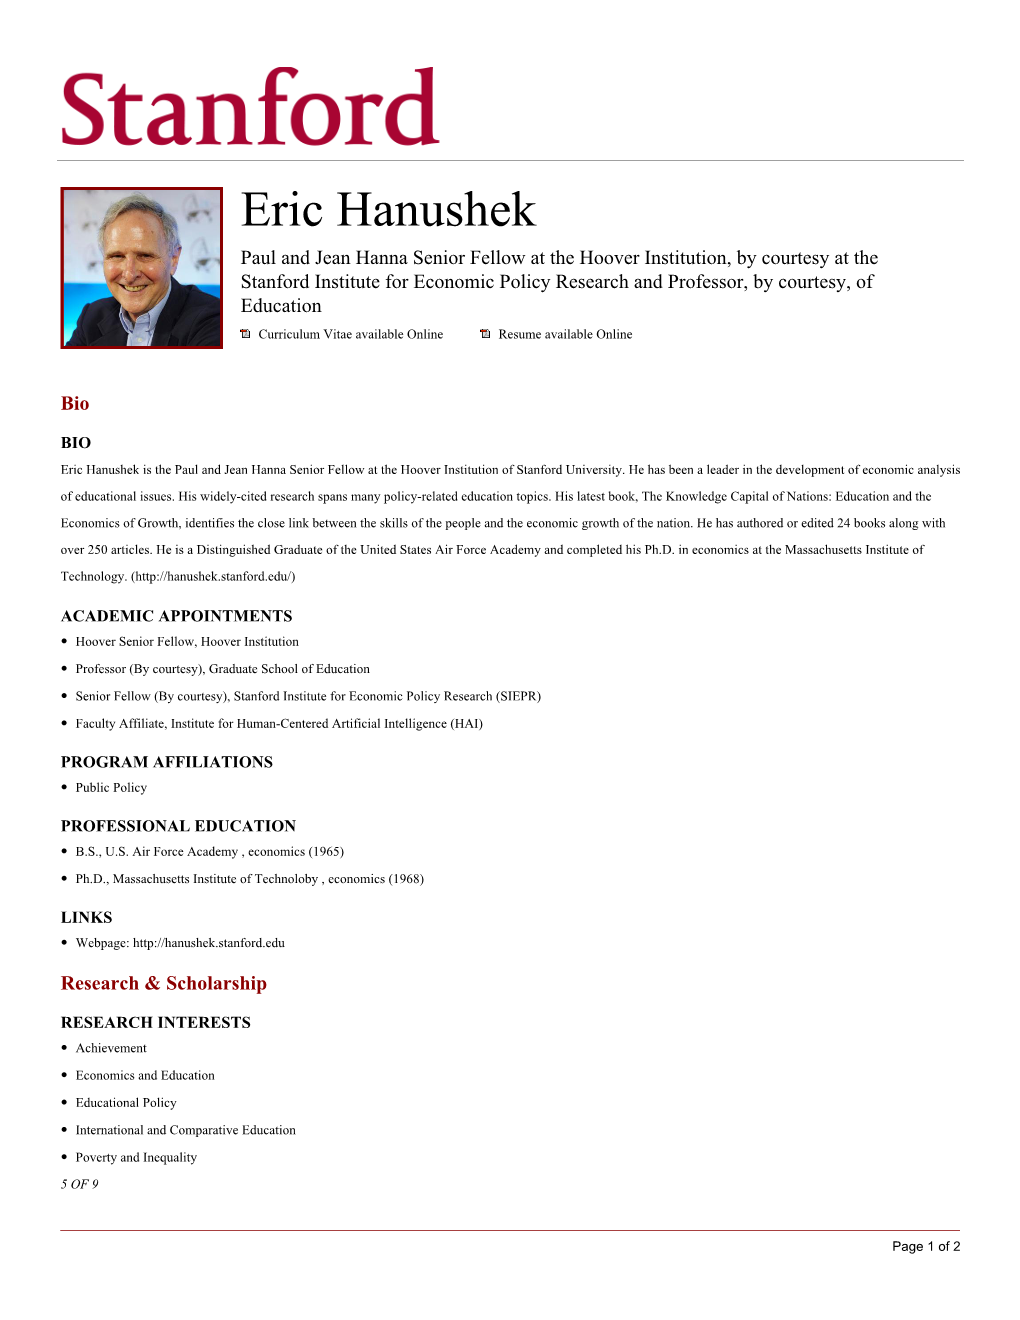 Eric Hanushek